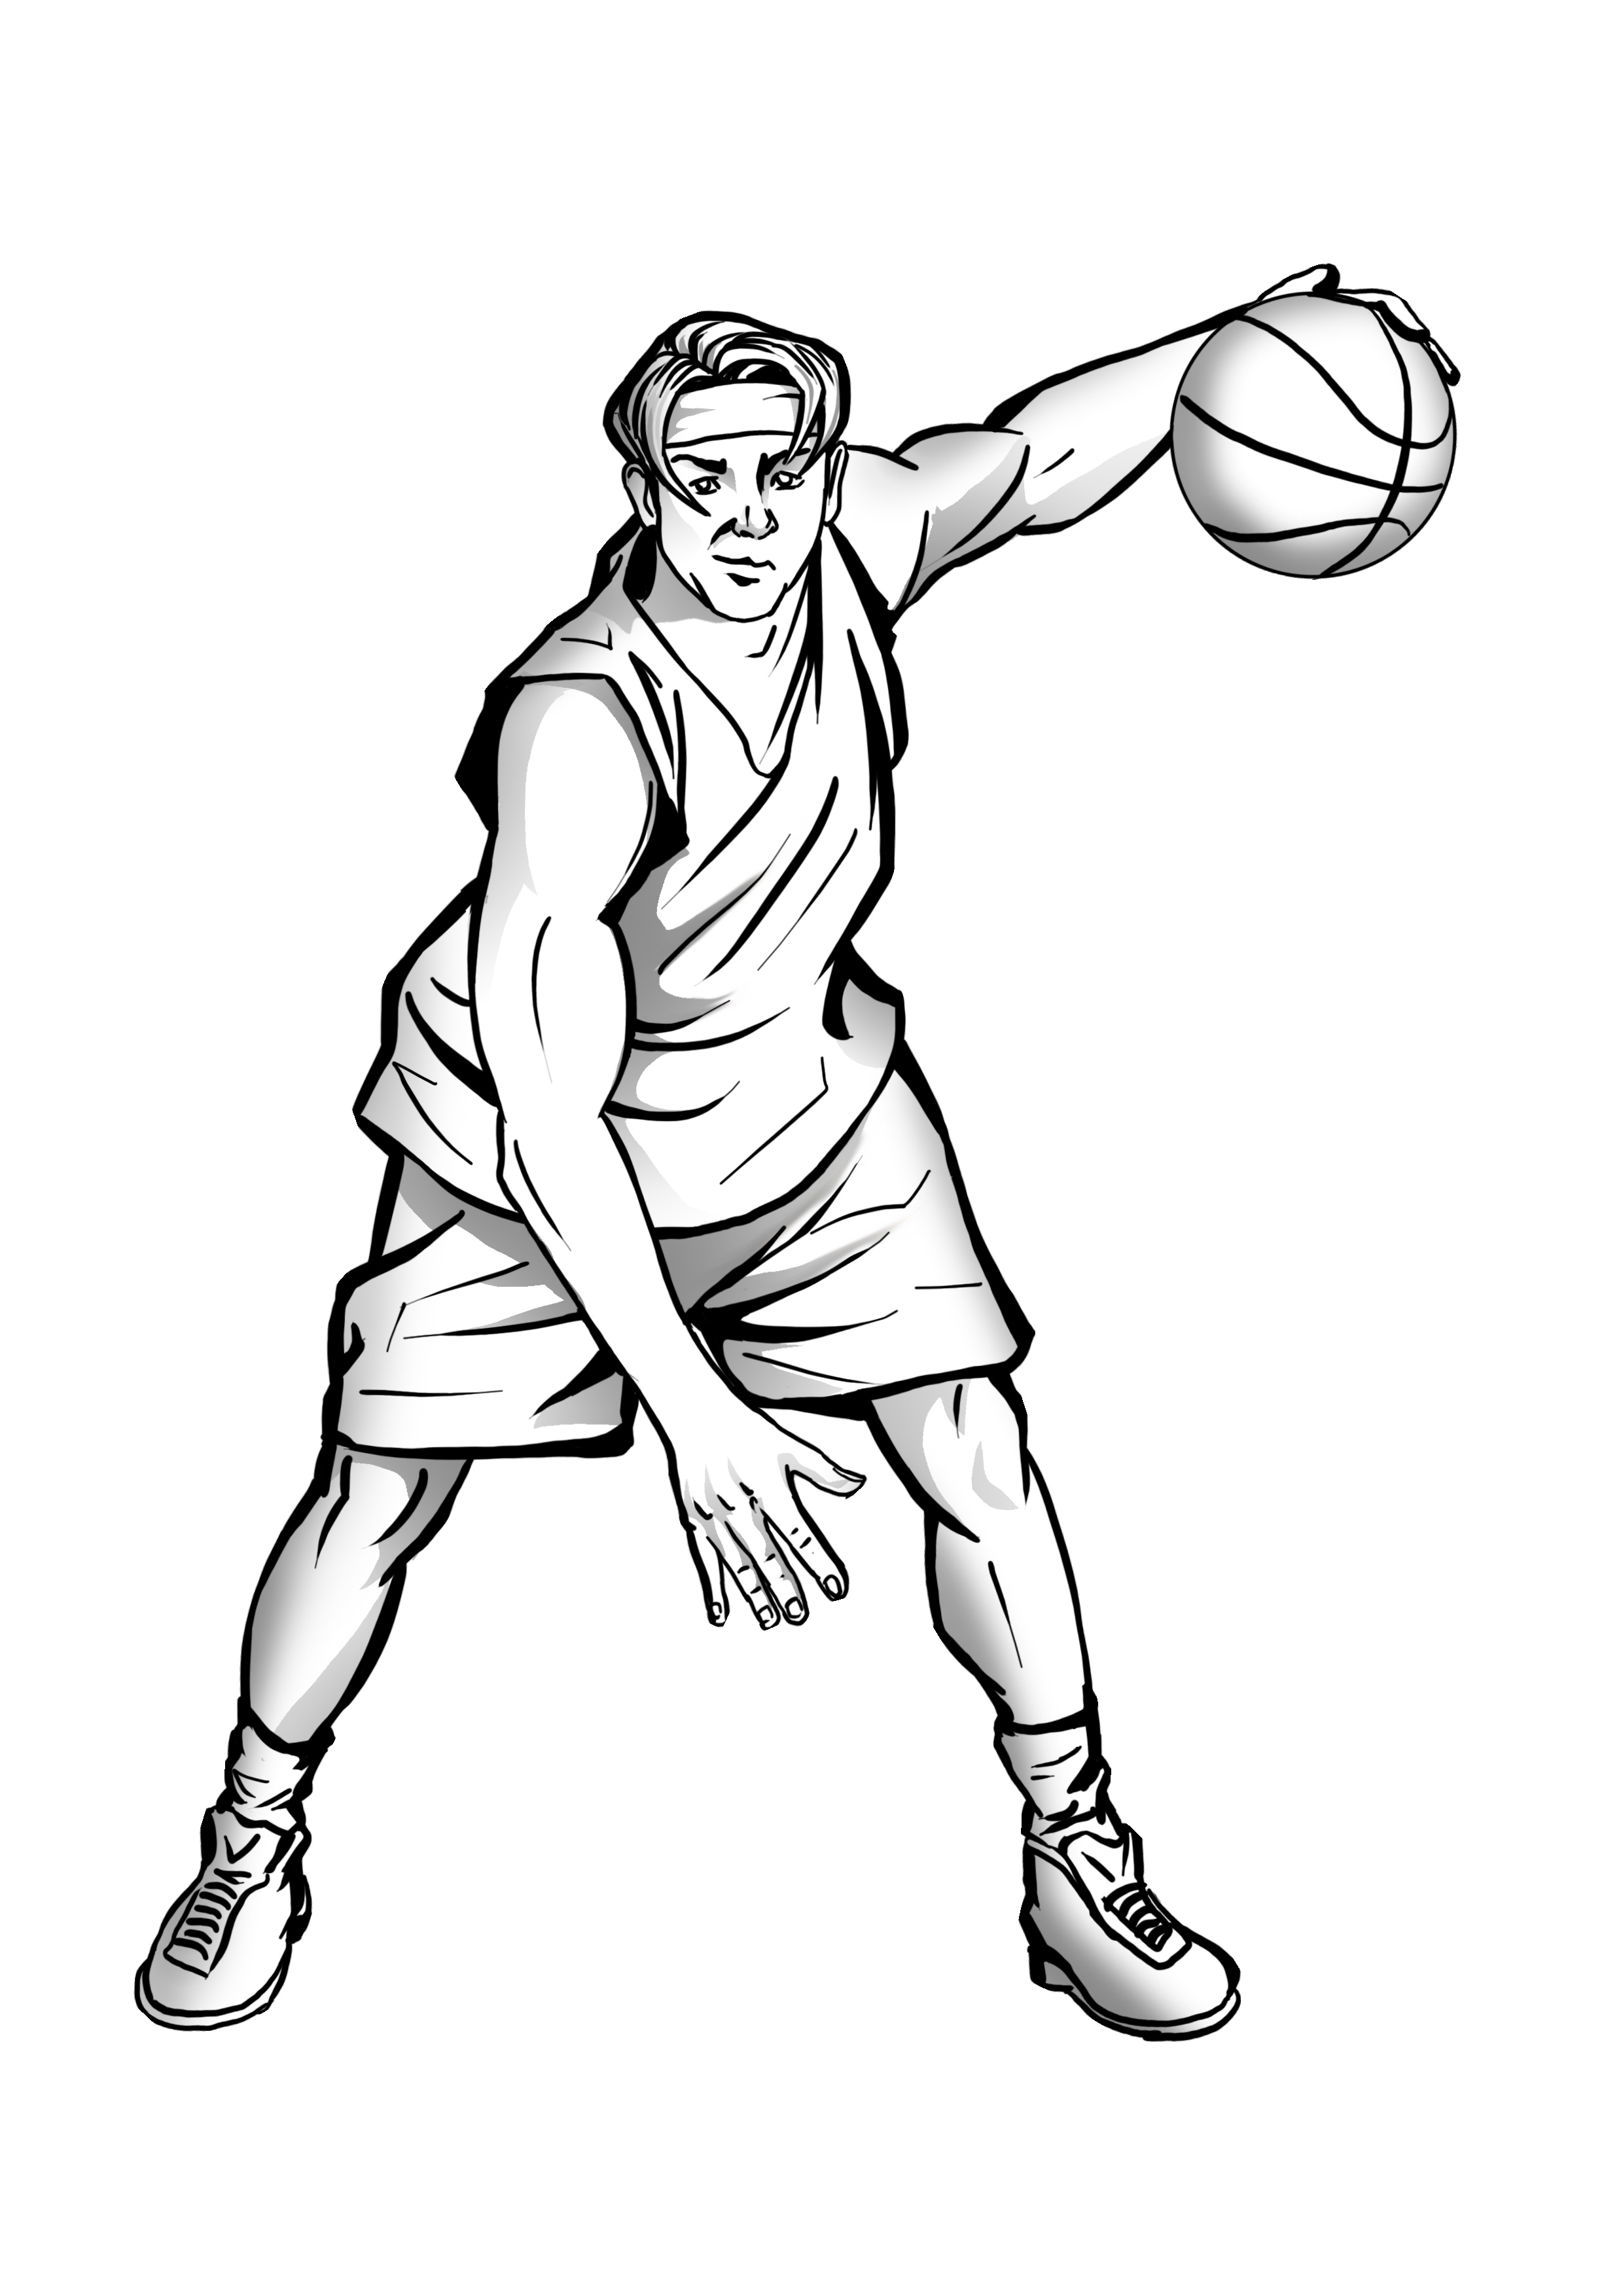 Как нарисовать баскетболиста? | Рисуем поэтапно баскетболиста в движении